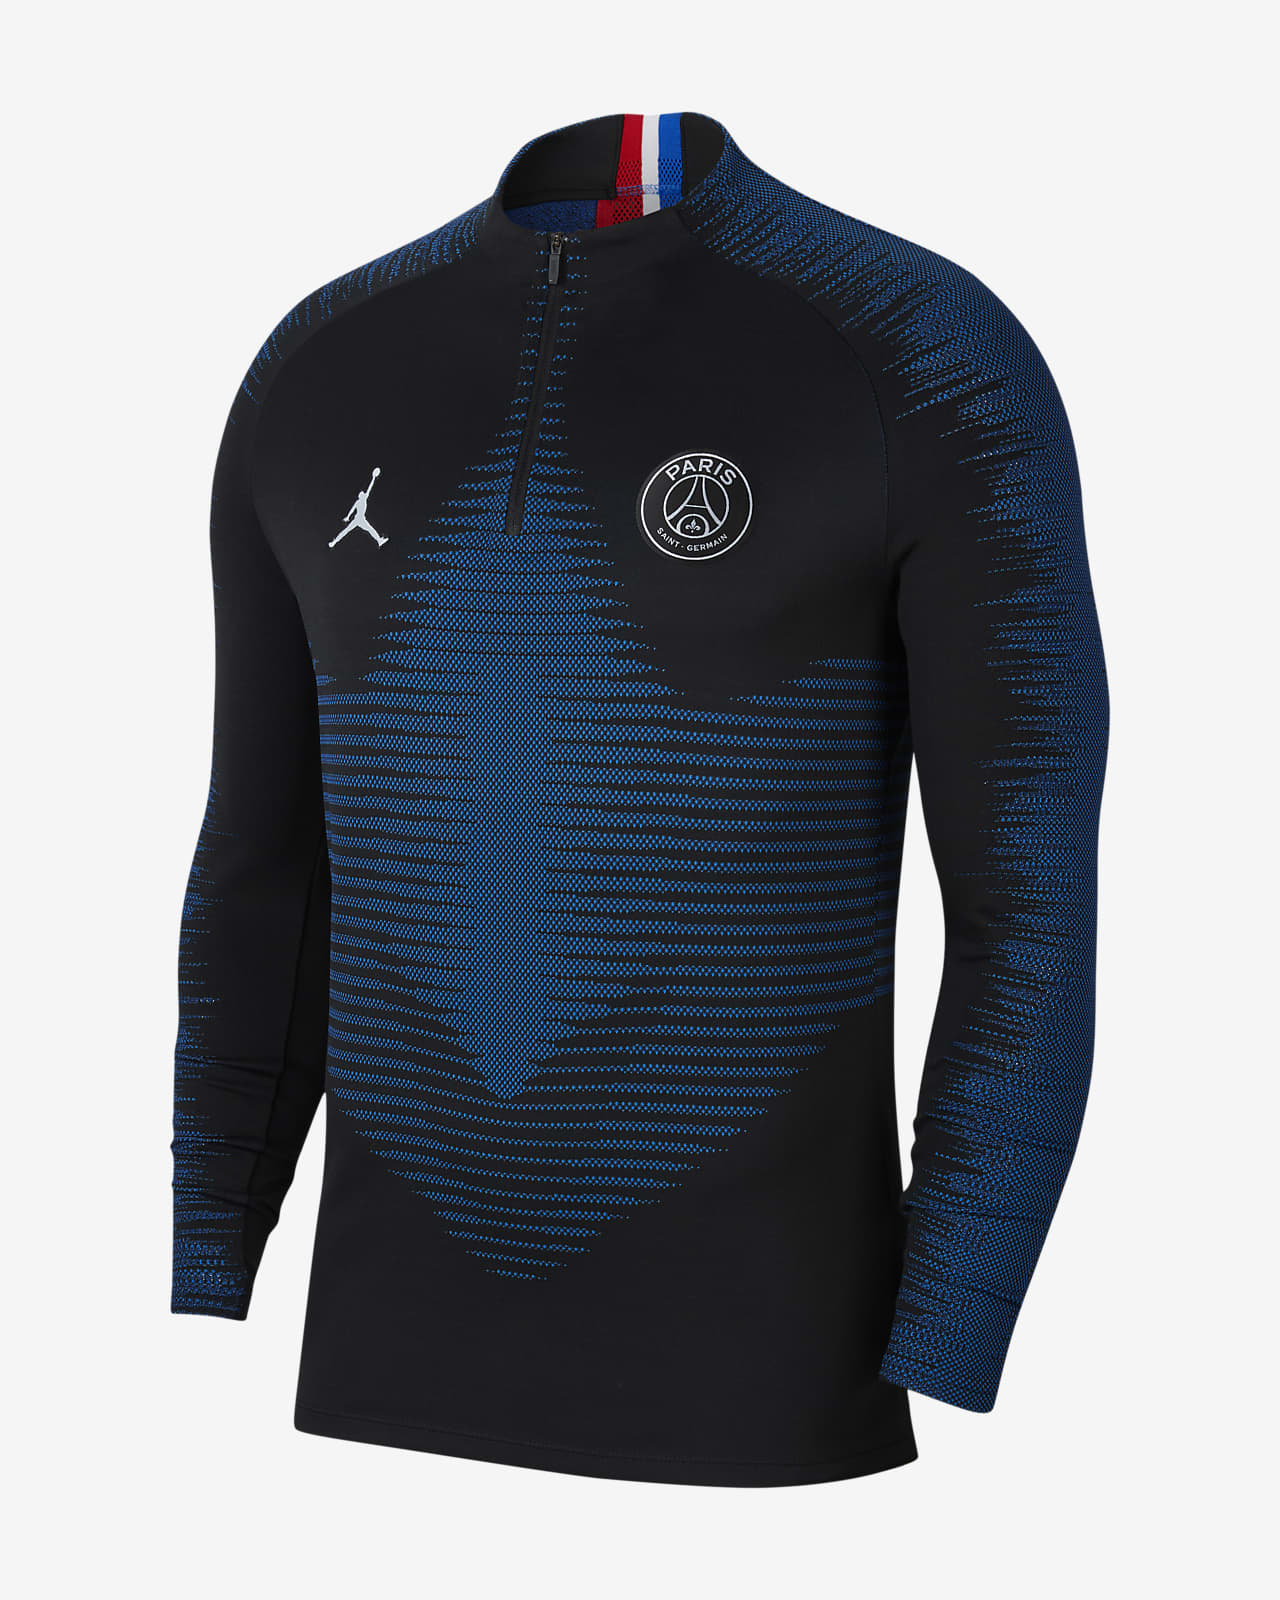 Nike VaporKnit Paris Saint-Germain 